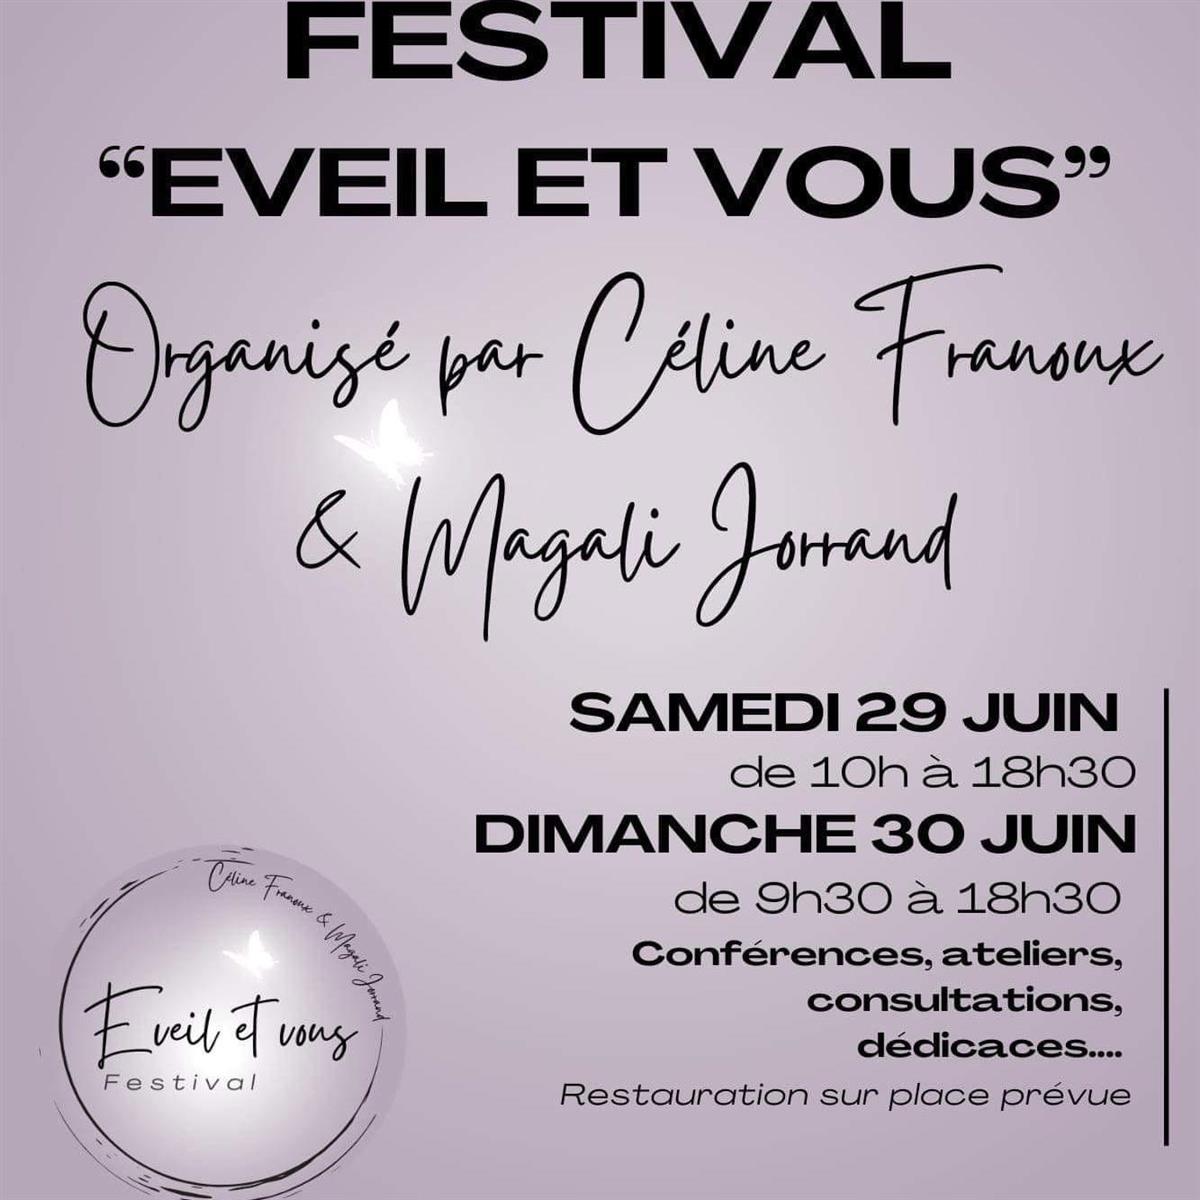 Festival "Eveil & vous"